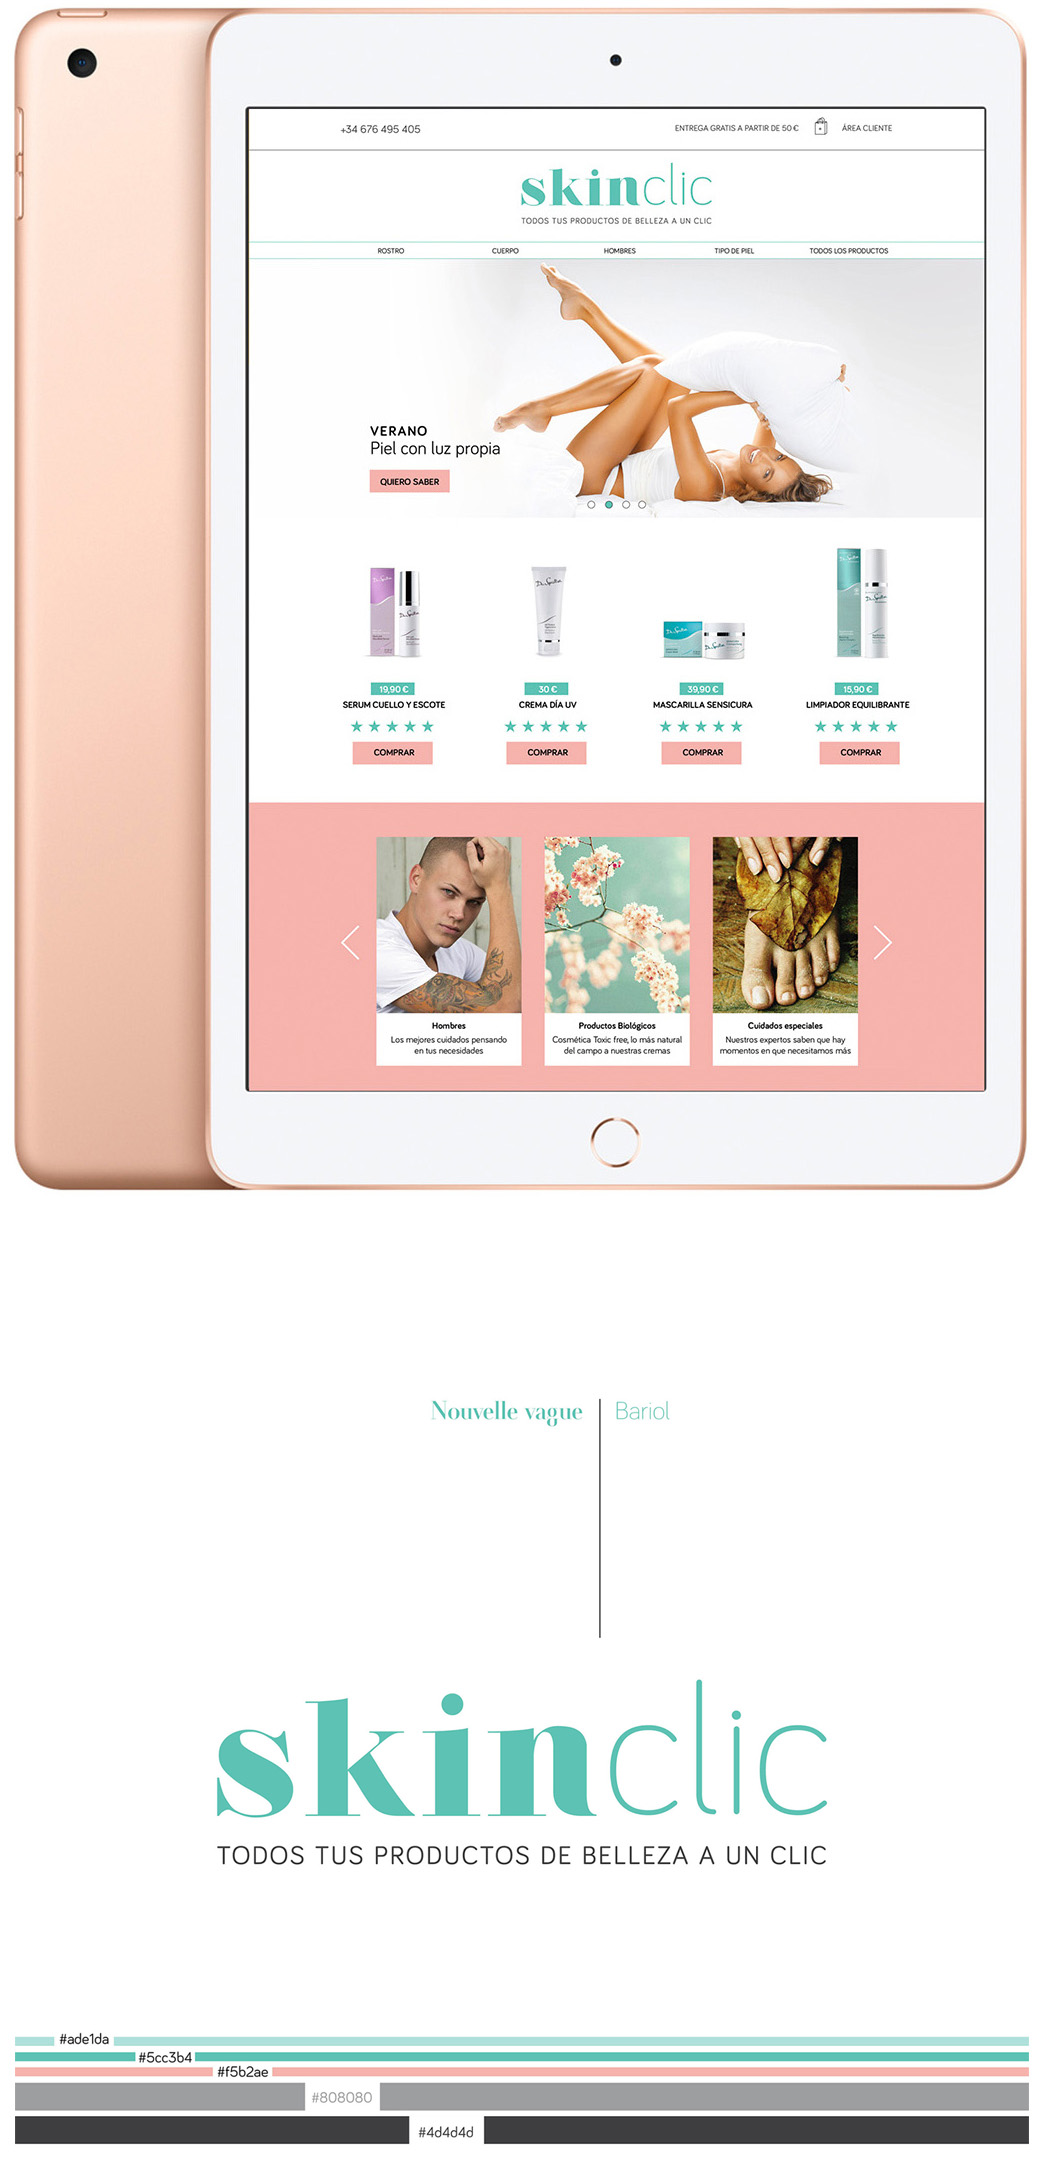 UX-UI, web y branding de Skinclic para vender productos cosméticos realizada por Susana Cid, diseñadora